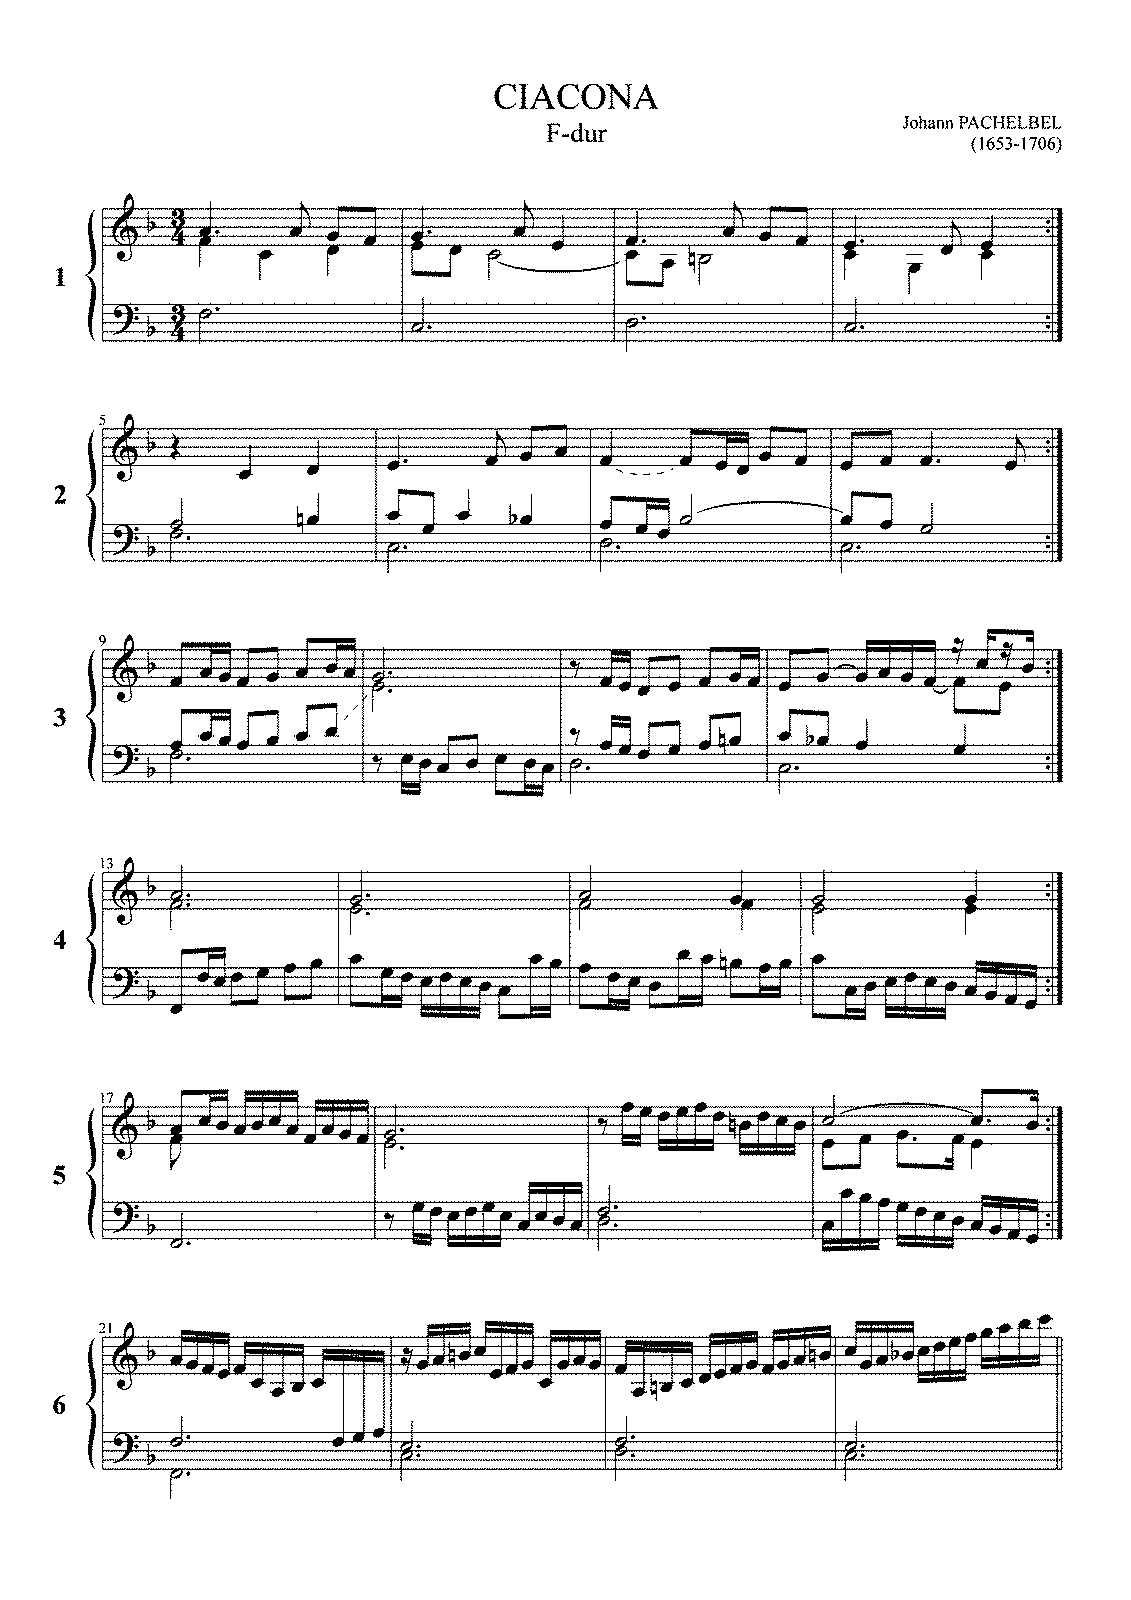 Chaconne in F major, P.42 (Pachelbel, Johann) - IMSLP